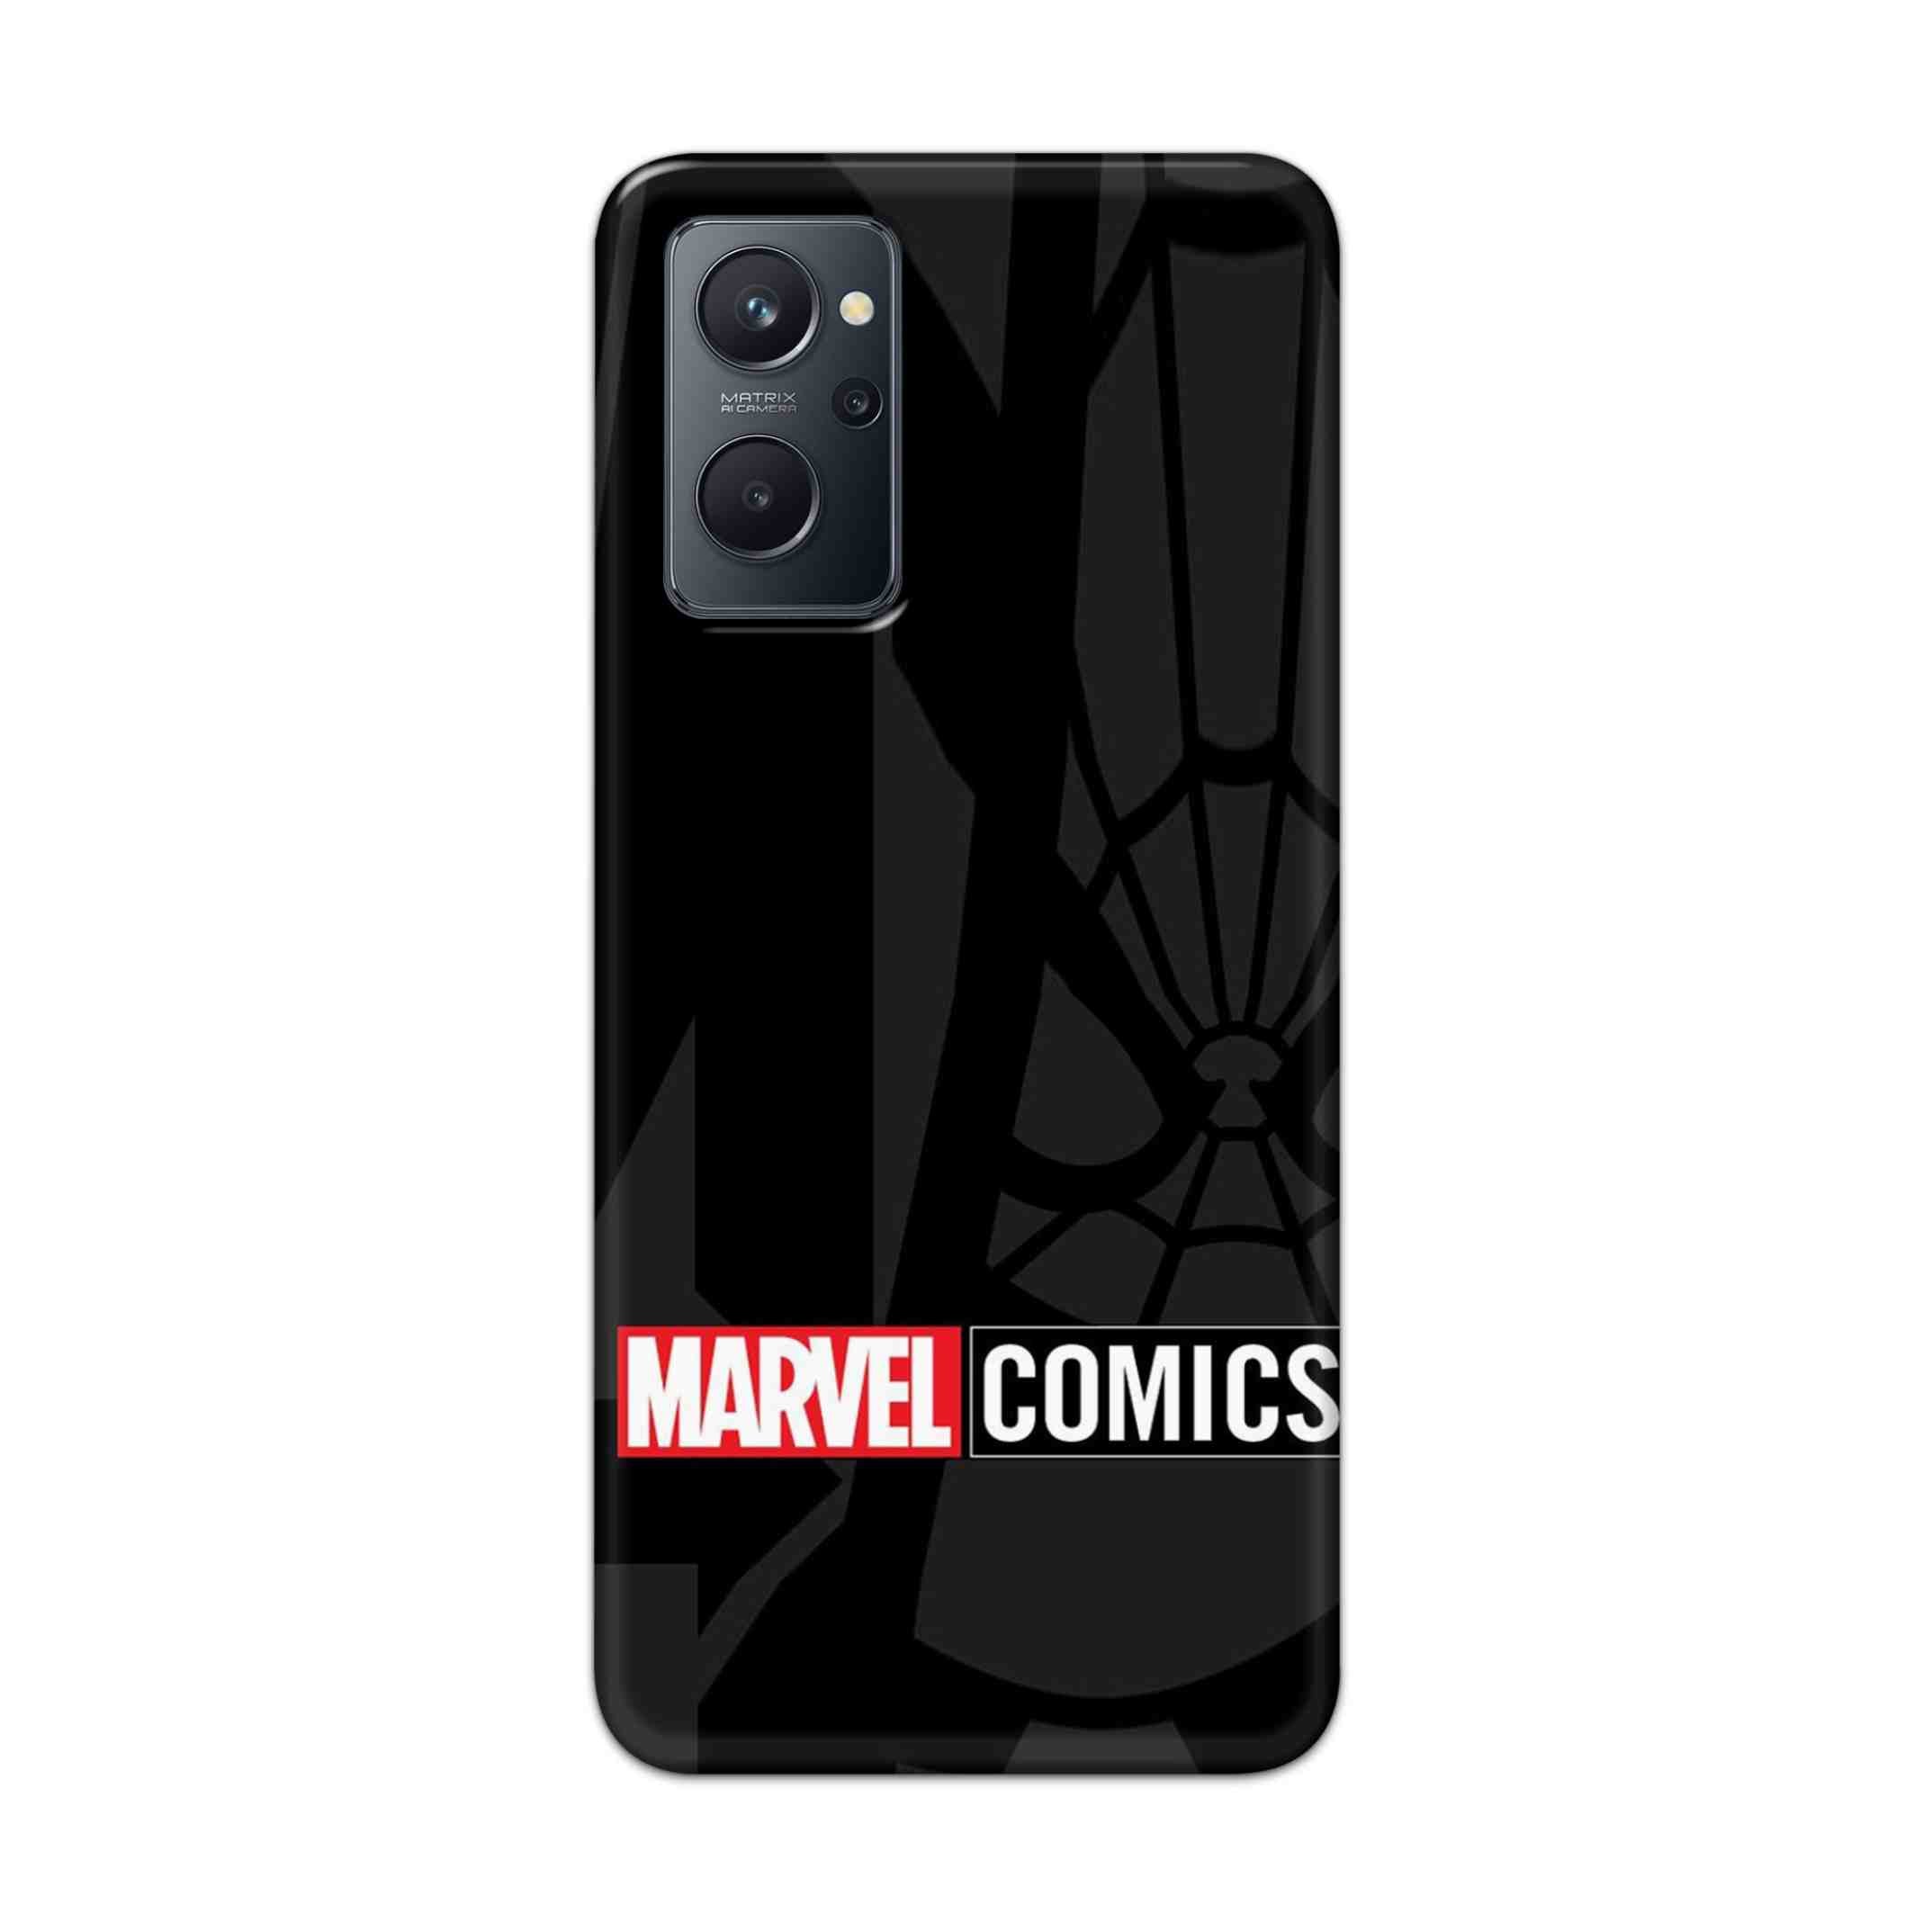 Buy Marvel Comics Hard Back Mobile Phone Case Cover For Realme 9i Online